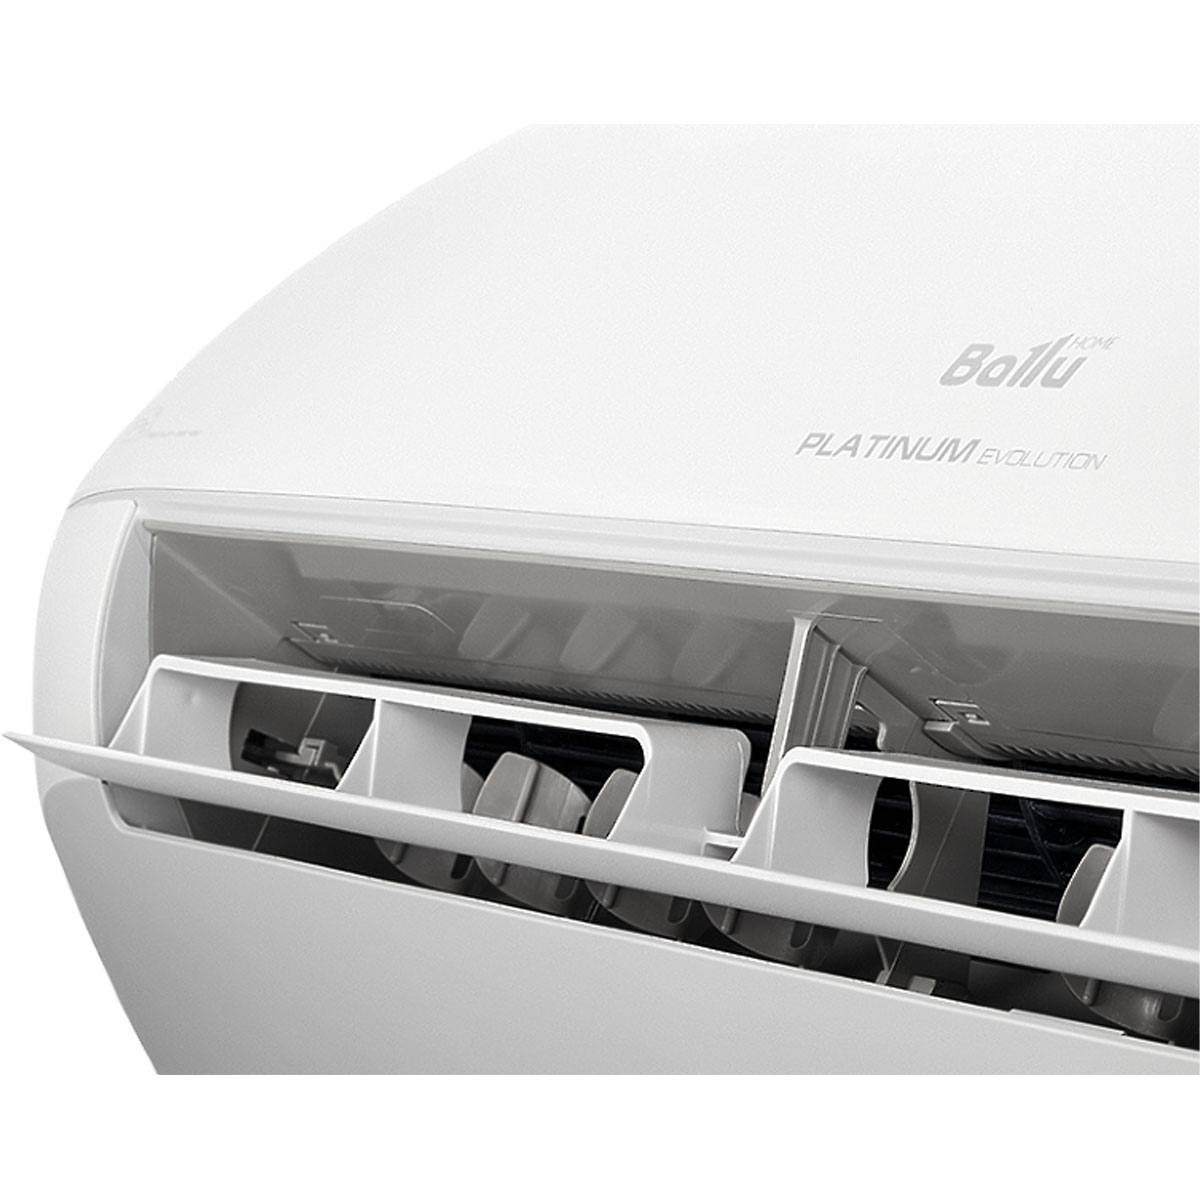 Инверторная сплит-система BALLU Platinum Evolution BSUI-09HN8_22Y (GMCC, Smart Wi-Fi, 38 м2, 19 дБ)